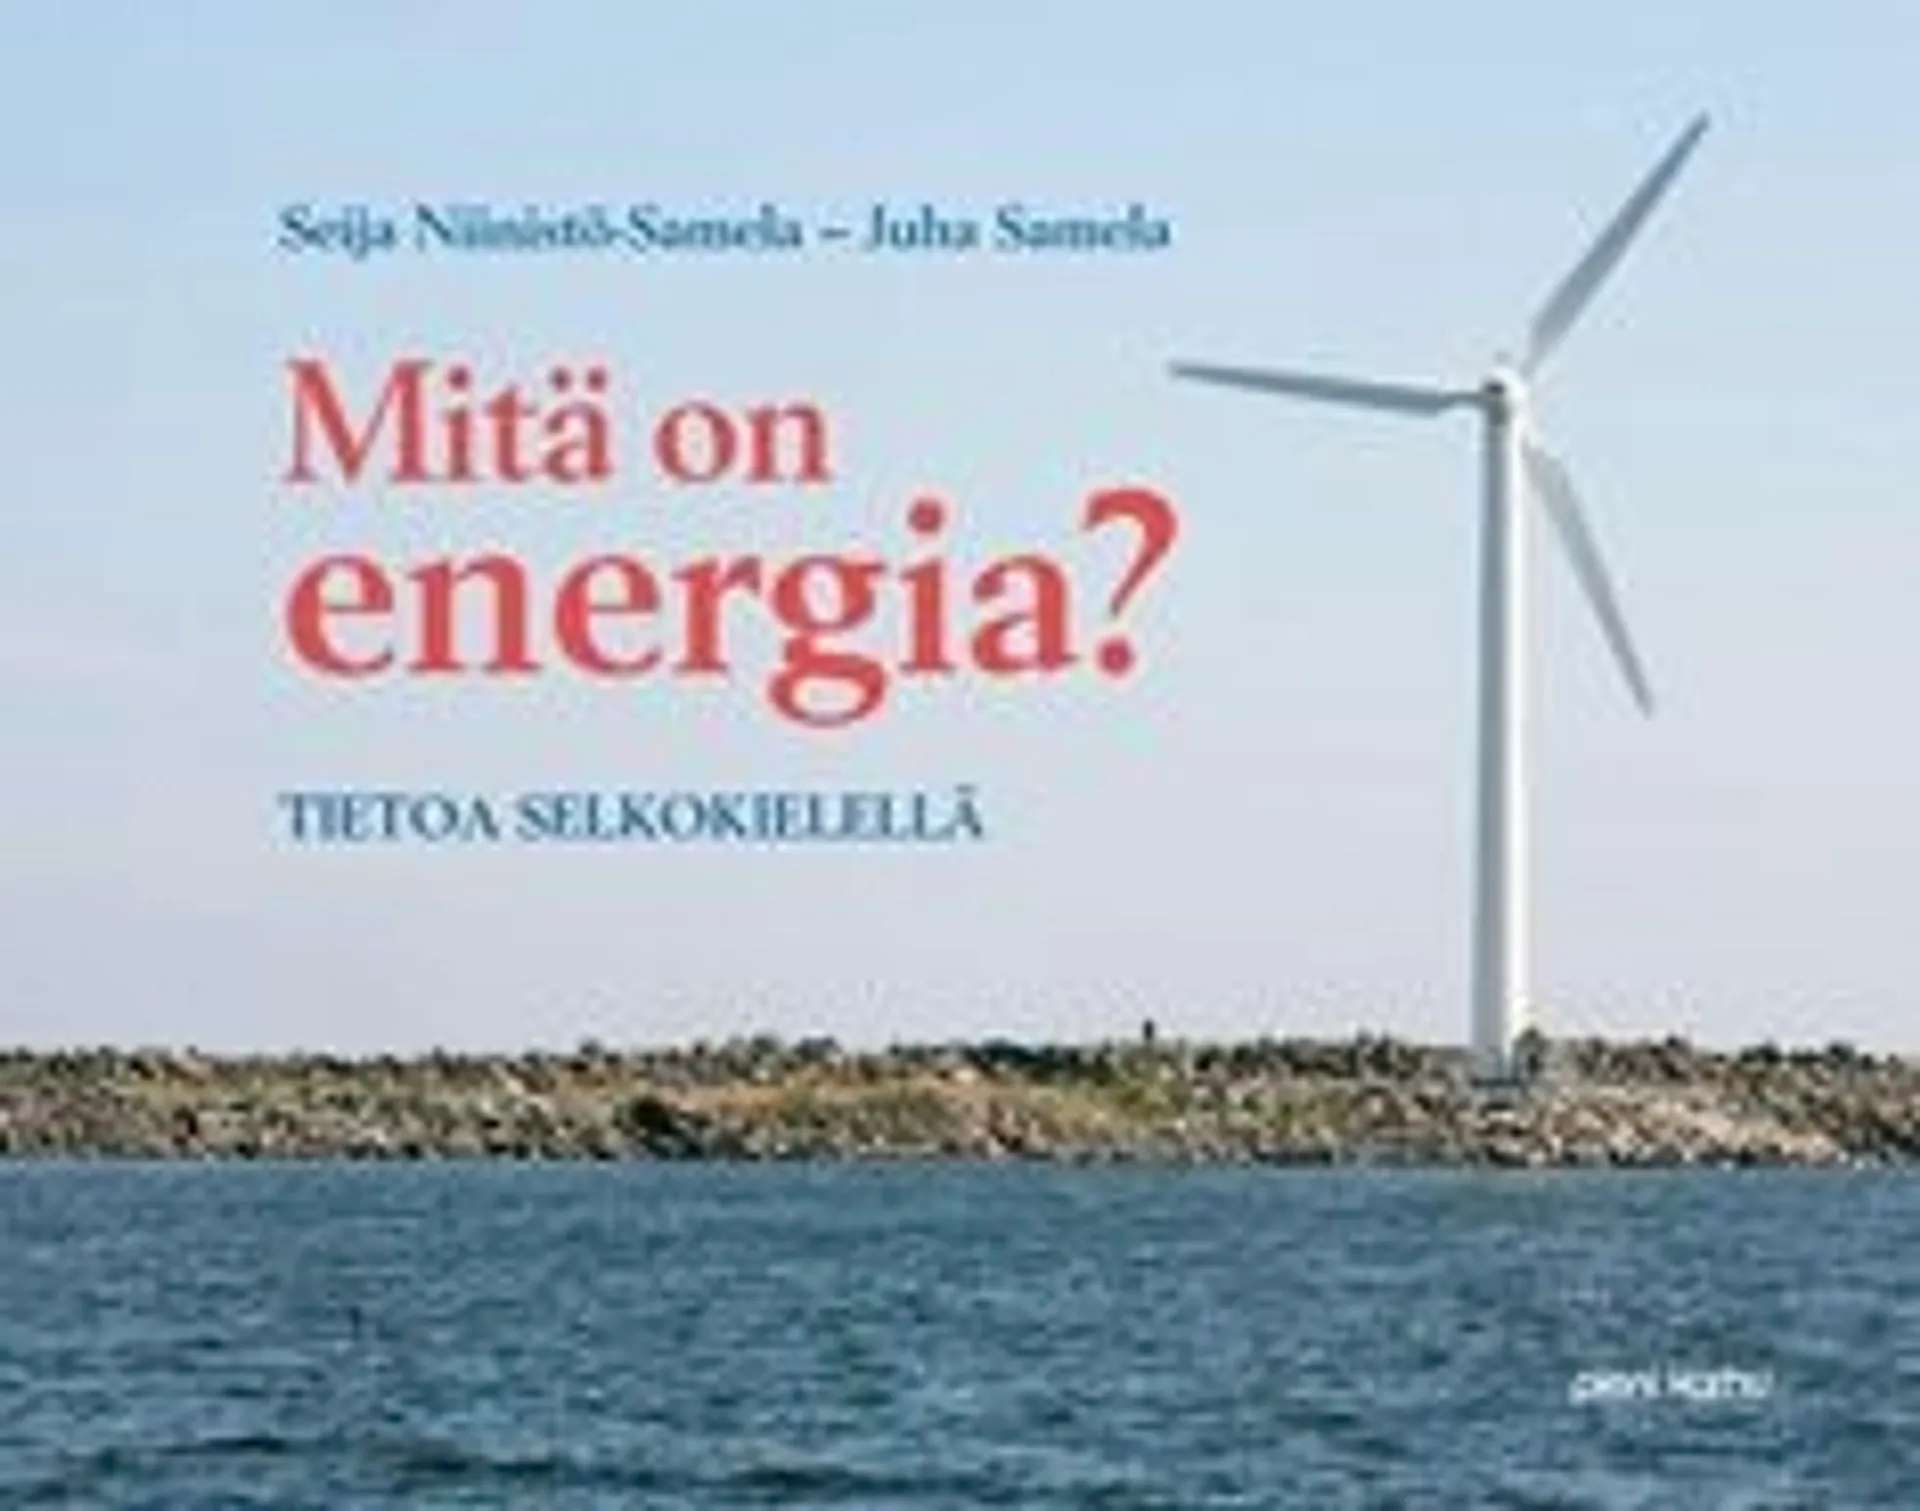 Samela-Niinistö, Mitä on energia?